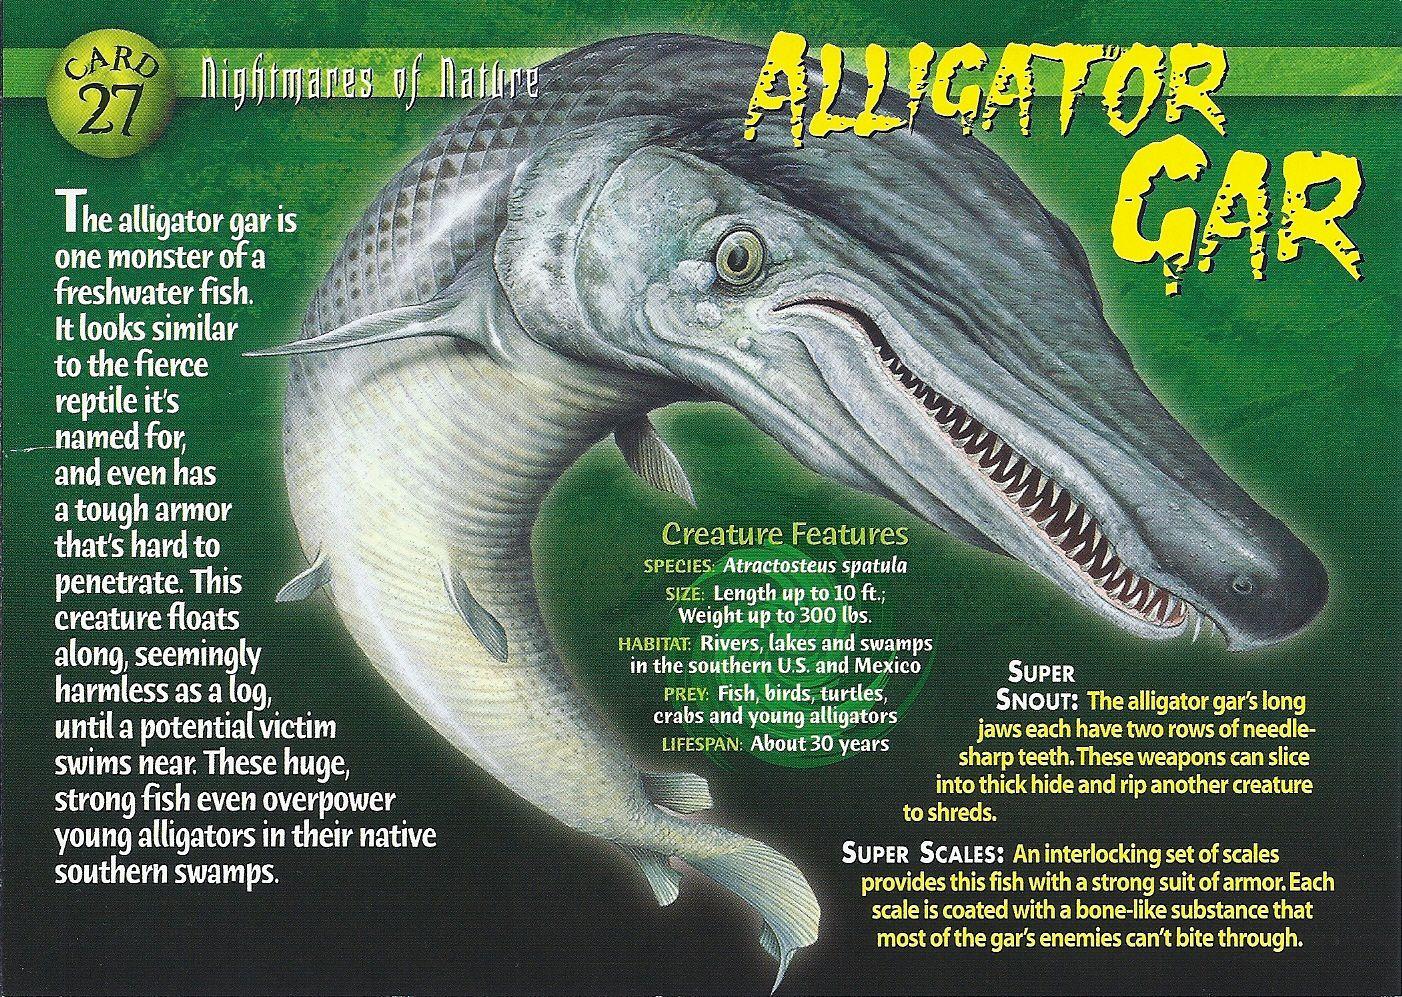 Alligator Gar Logo - Alligator Gar. Weird n' Wild Creatures